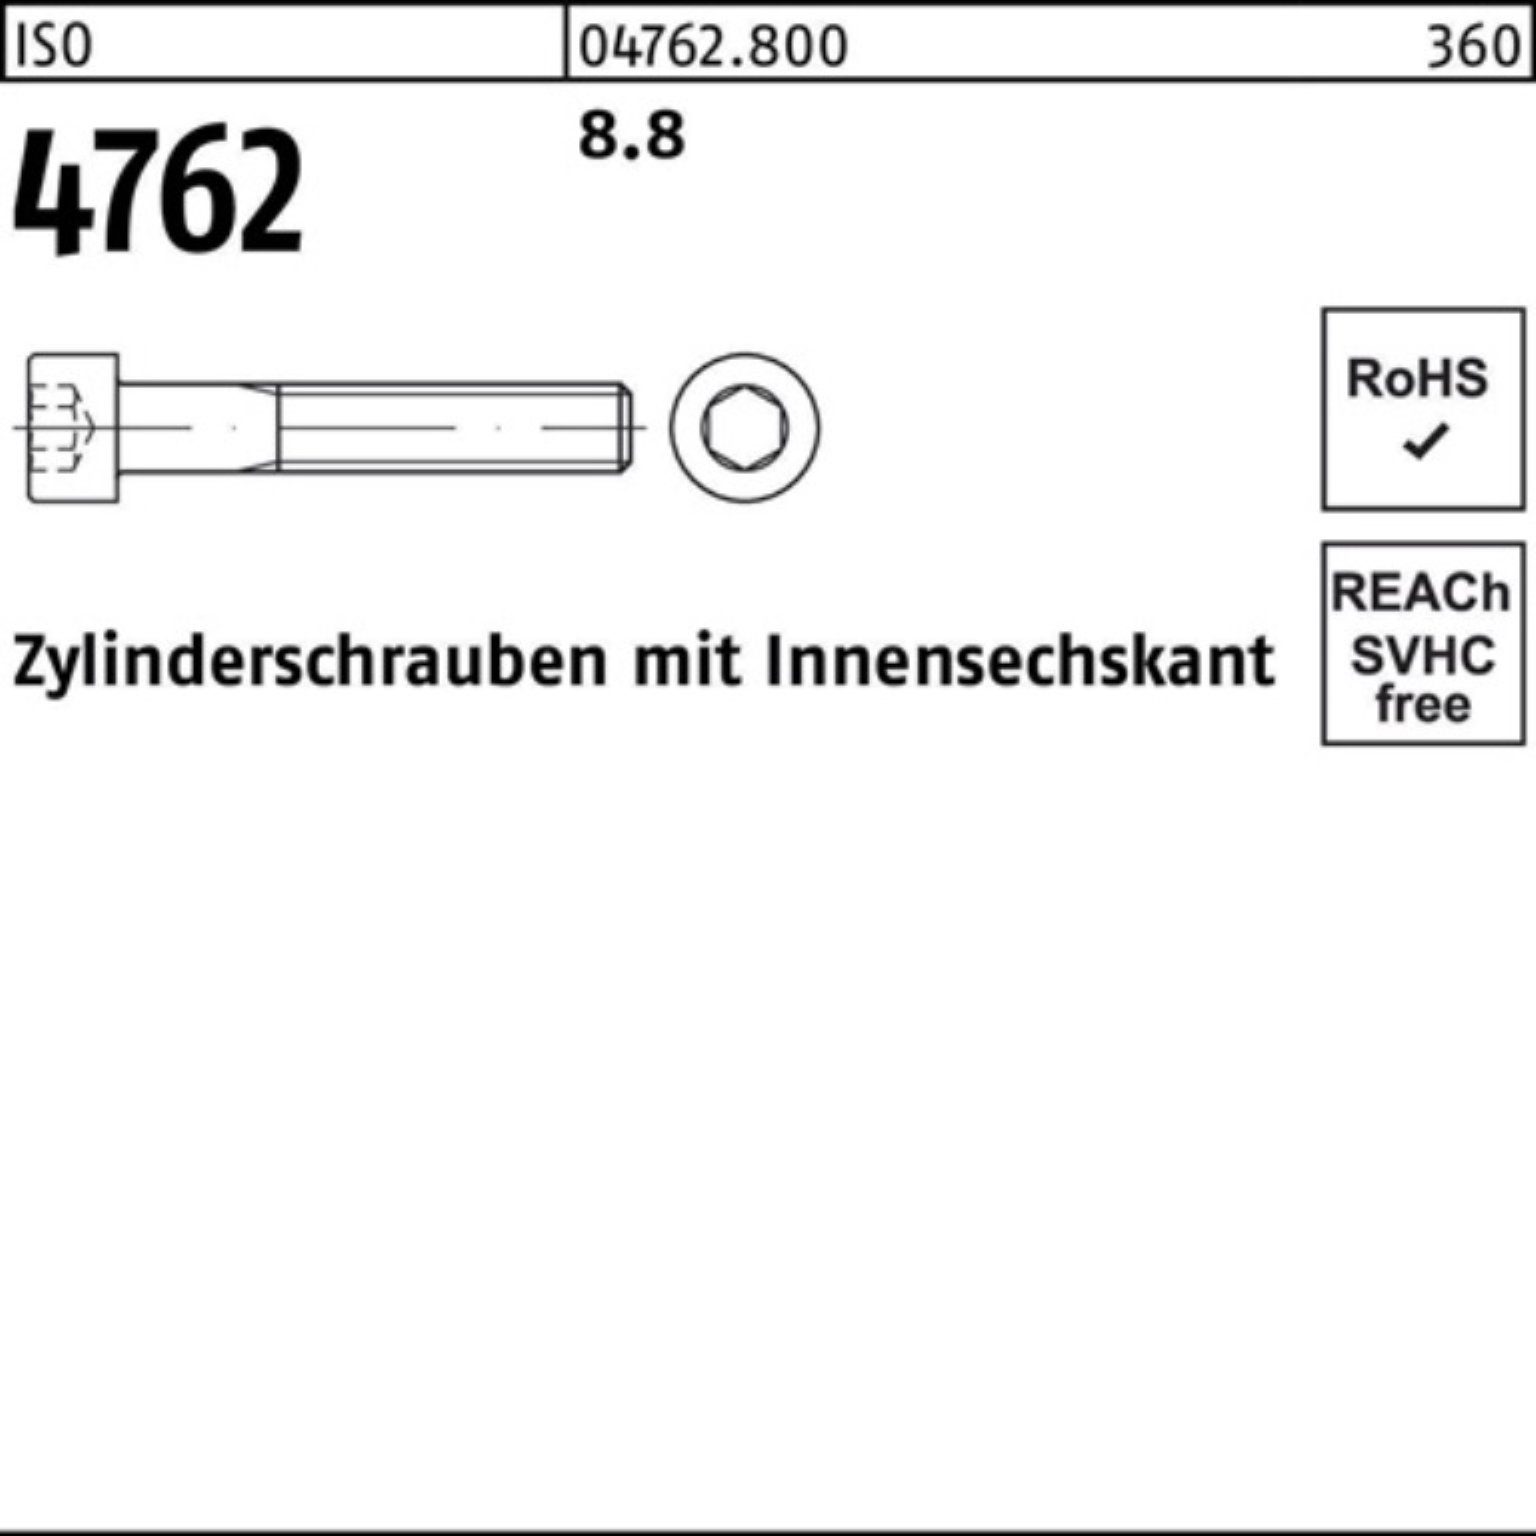 [Neueste Werke & Schnäppchen] Reyher Zylinderschraube Pack 100 M4x ISO I Zylinderschraube Innen-6kt 100er 18 Stück 4762 8.8